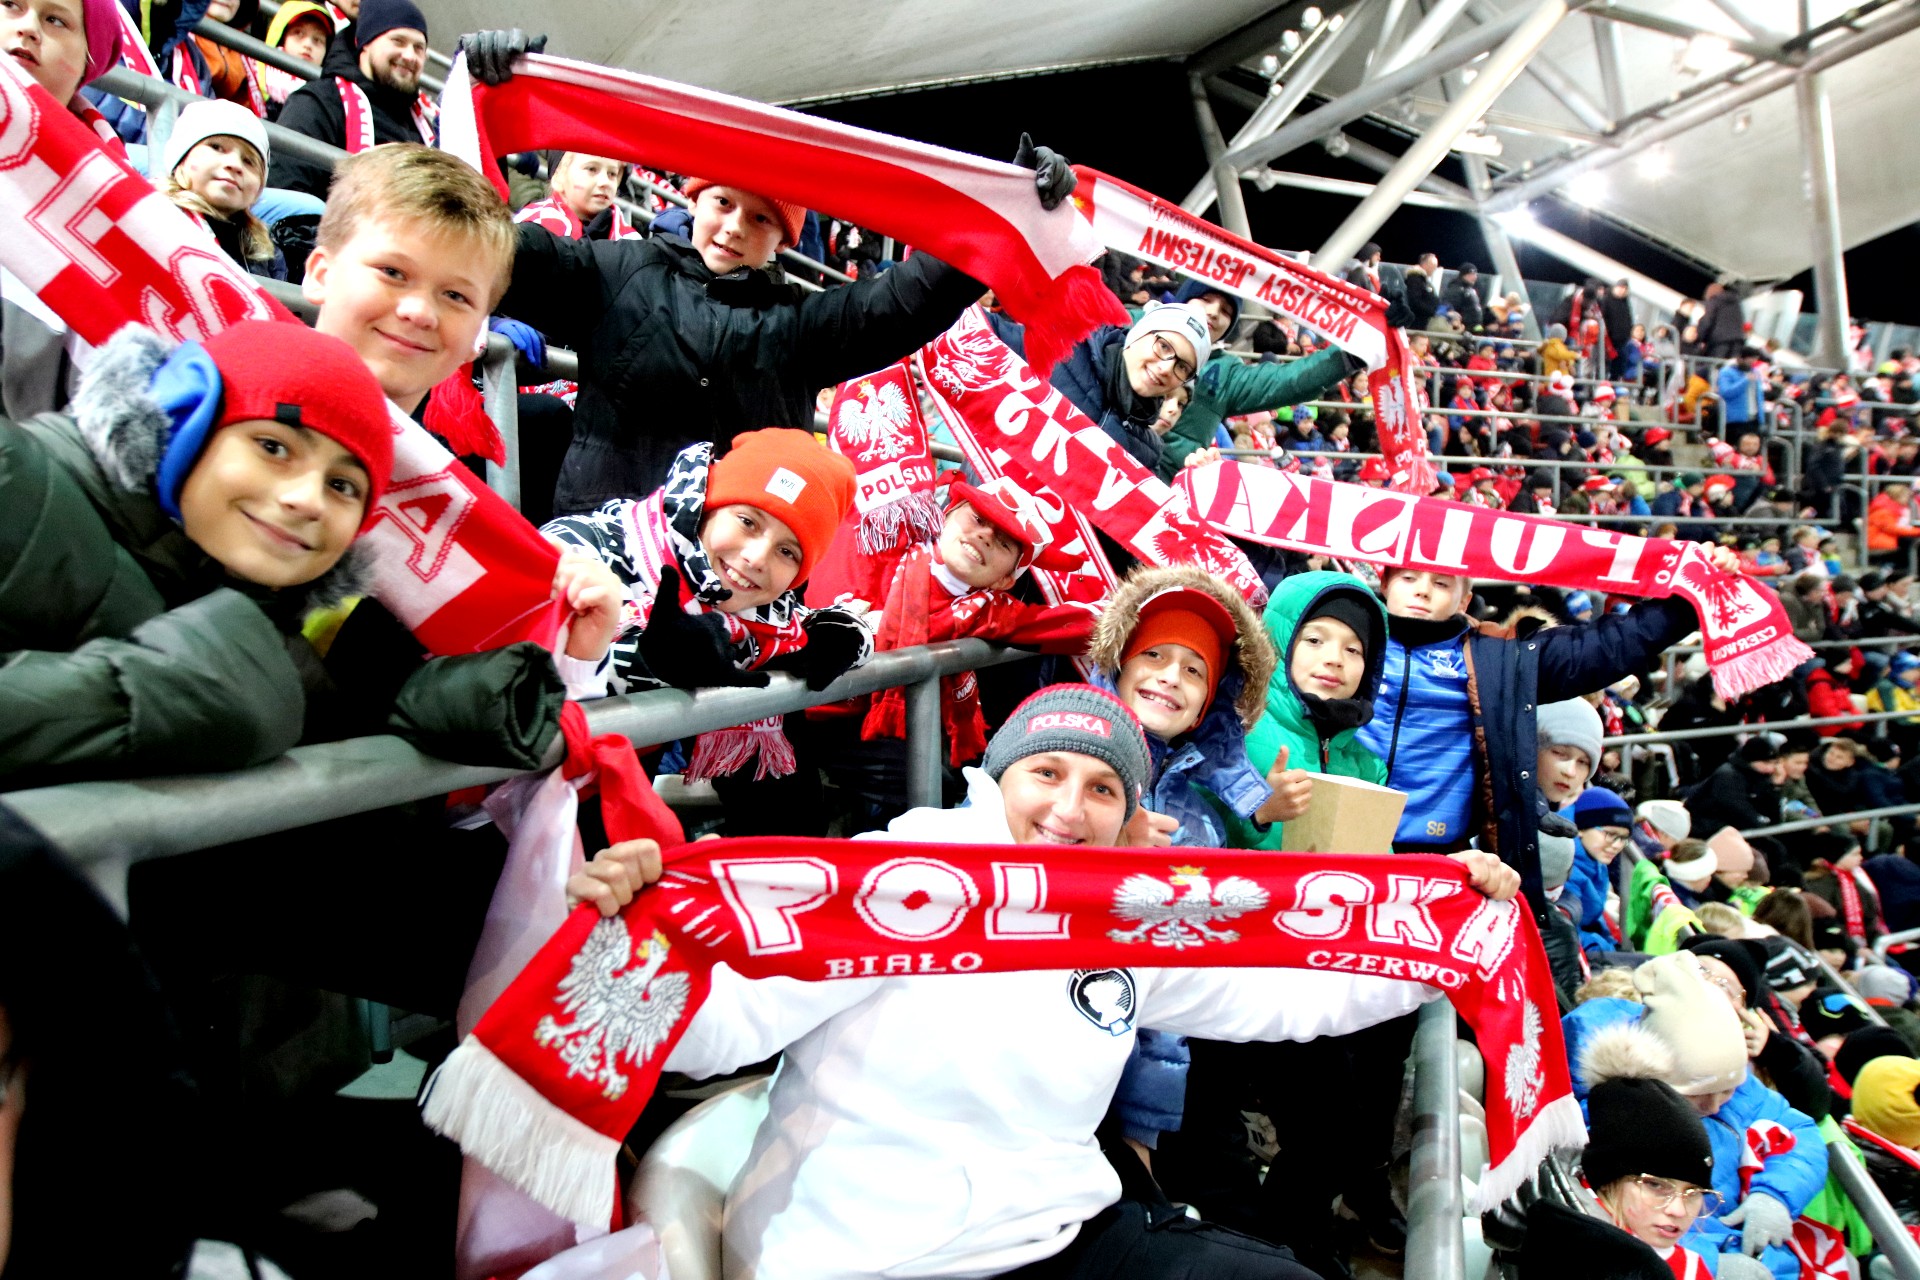 Duża grupa roześmianych dzieci siedzi na trybunie stadionu, machają biało-czerwonymi szalikami.